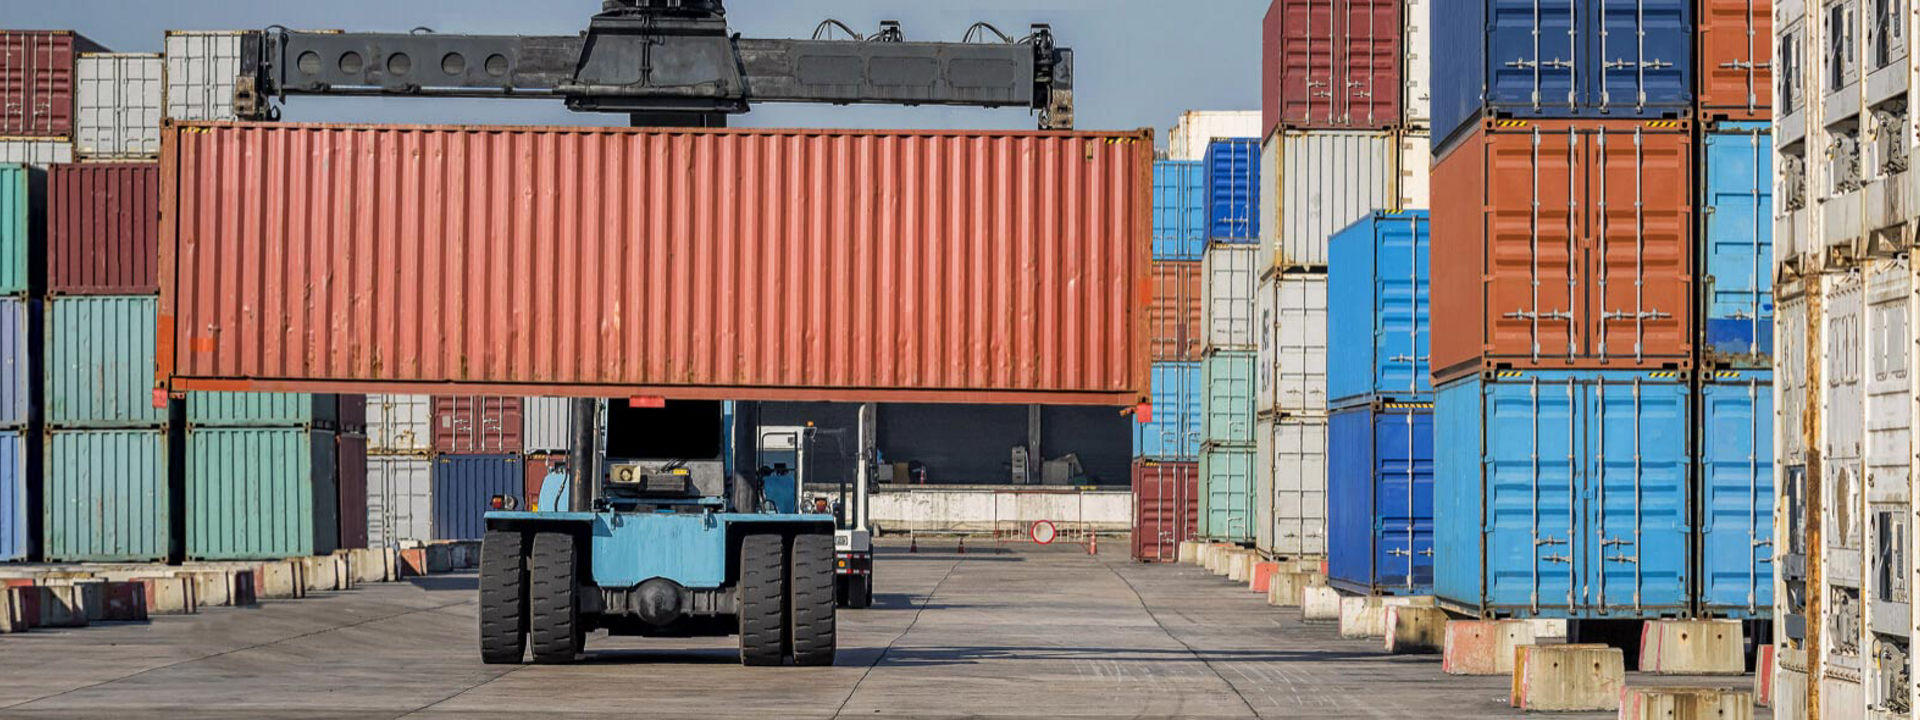 Een vorkheftruck uitgerust met Bridgestone terreinbanden verplaatst zeecontainers in een grote industriehaven